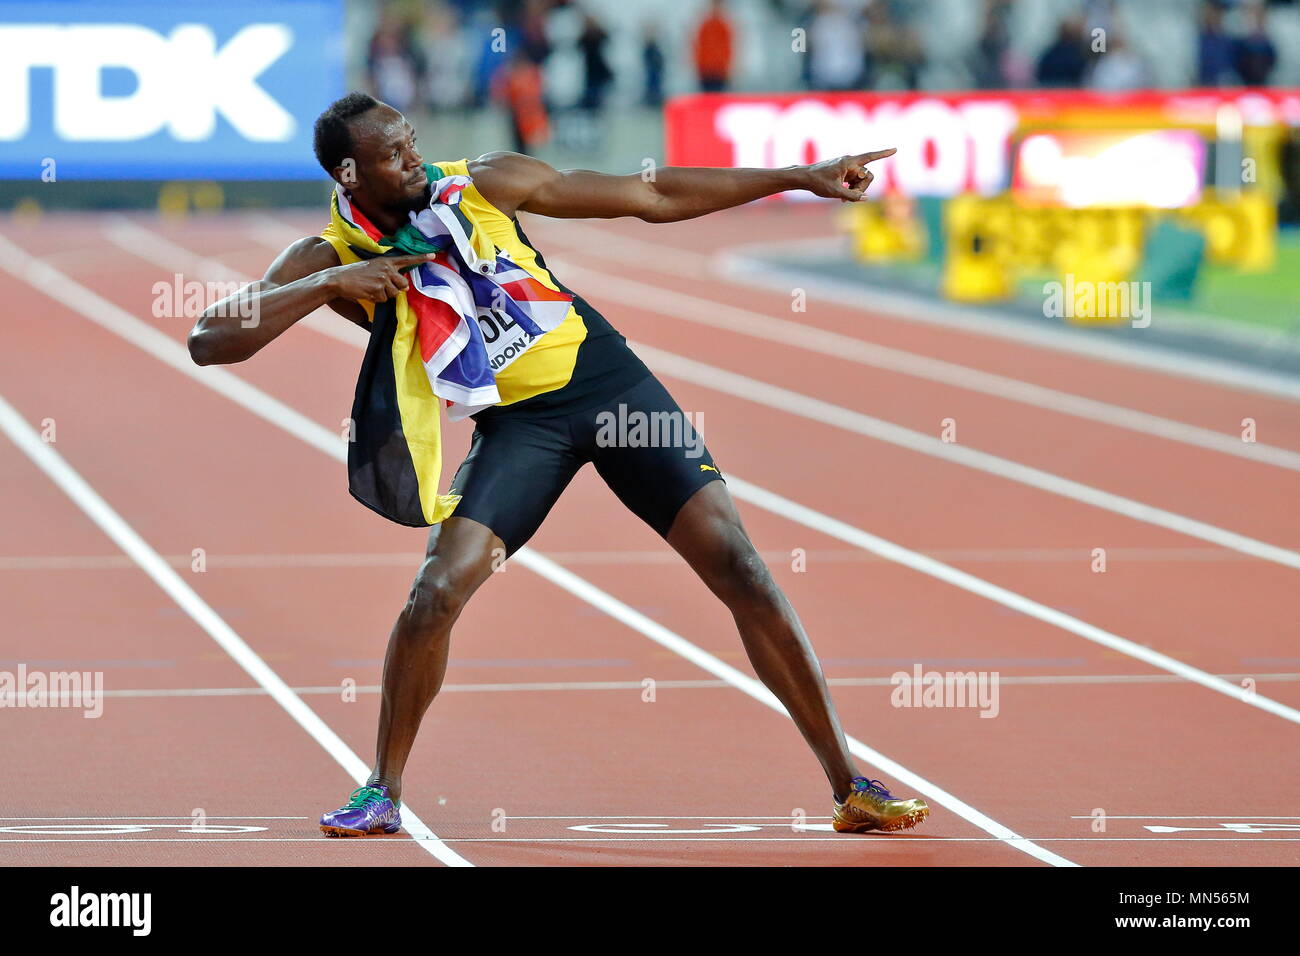 LONDON, ENGLAND - 05. August: Usain Bolt aus Jamaika, das seine letzten 100 m Rennen laufen, steht sowohl mit der Jamaikanischen und Union Jack Flagge um den Hals und zieht in seiner berühmten Blitz pose in Tag zwei des 16. IAAF Leichtathletik WM 2017 in London an der London Stadion am 5. August 2017 in London, Vereinigtes Königreich. - - - Bild von: © Paul Cunningham Stockfoto